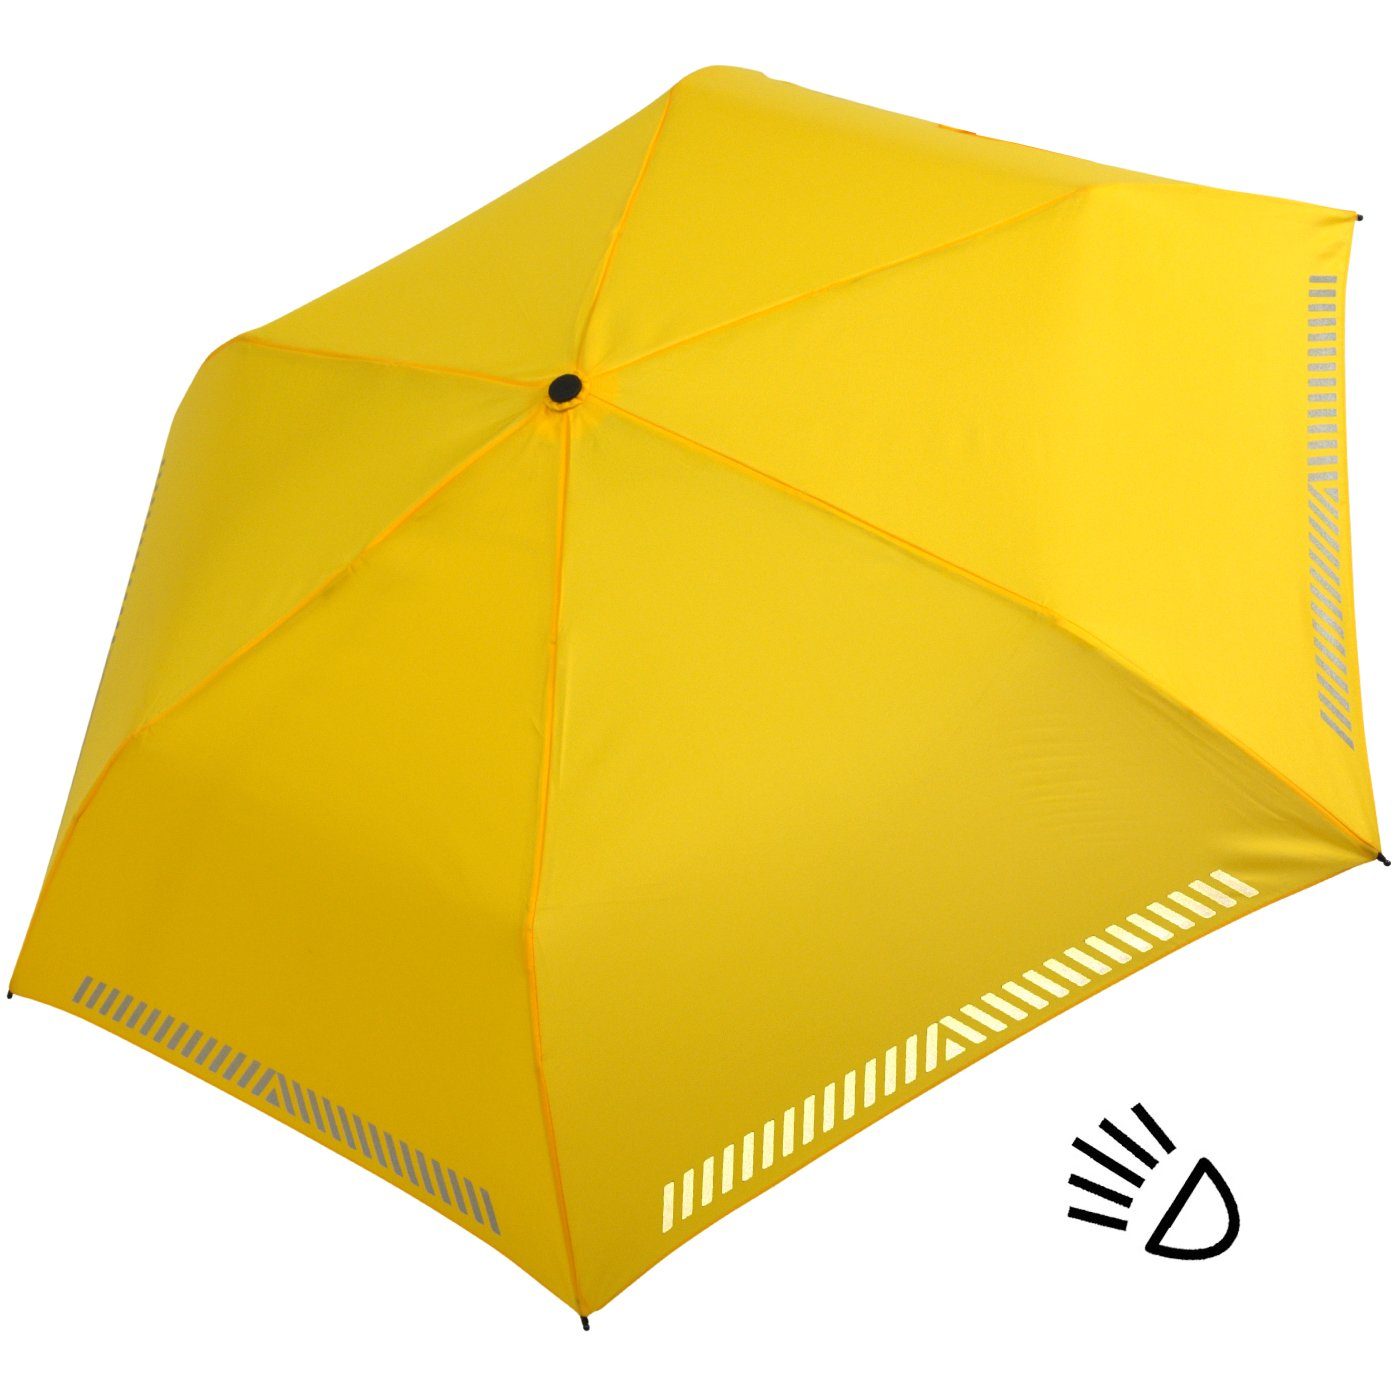 - iX-brella Taschenregenschirm gelb durch Sicherheit mit reflektierend, Kinderschirm Auf-Zu-Automatik, Reflex-Streifen